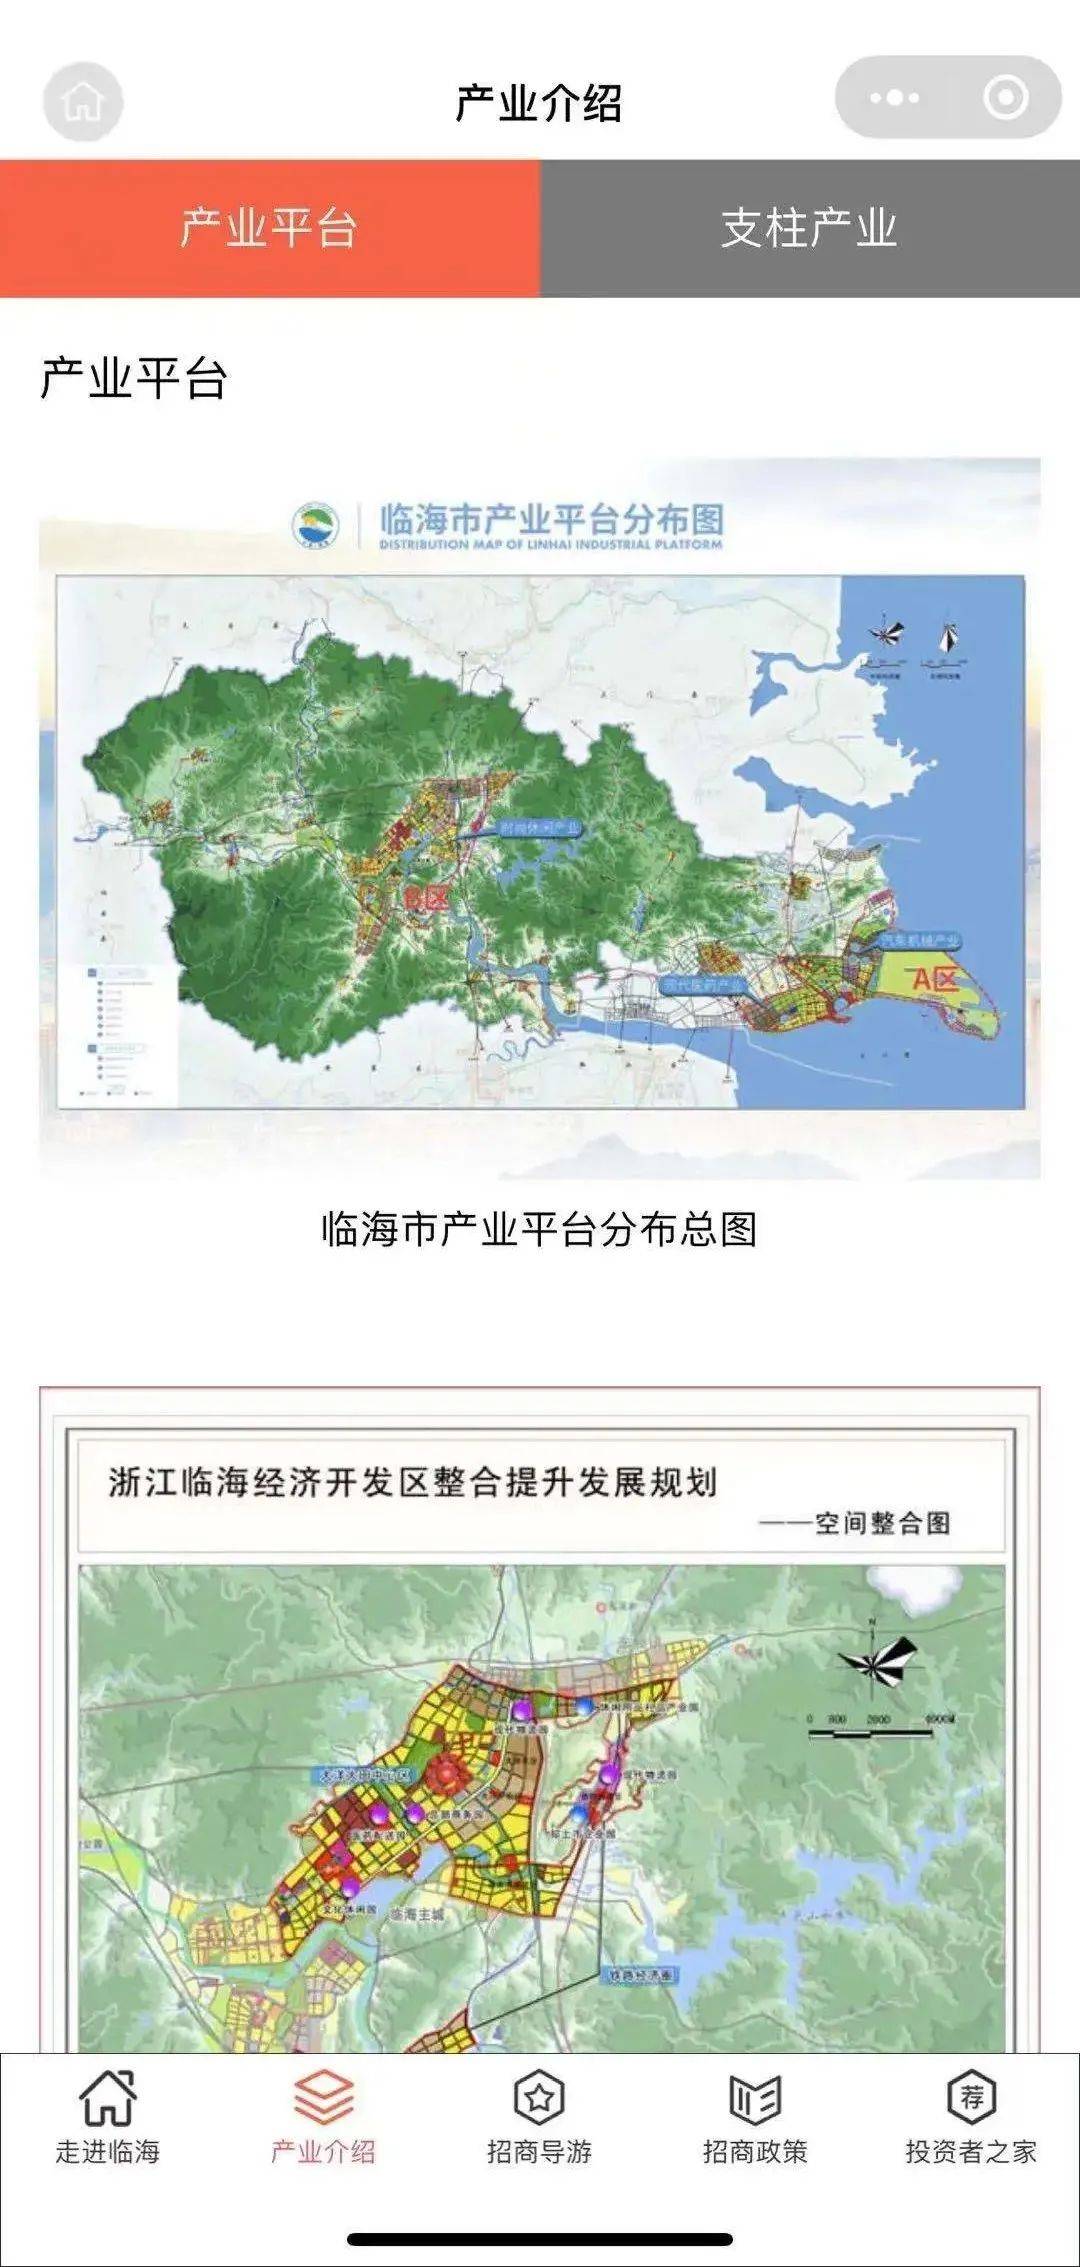 临海市区地图高清版图片